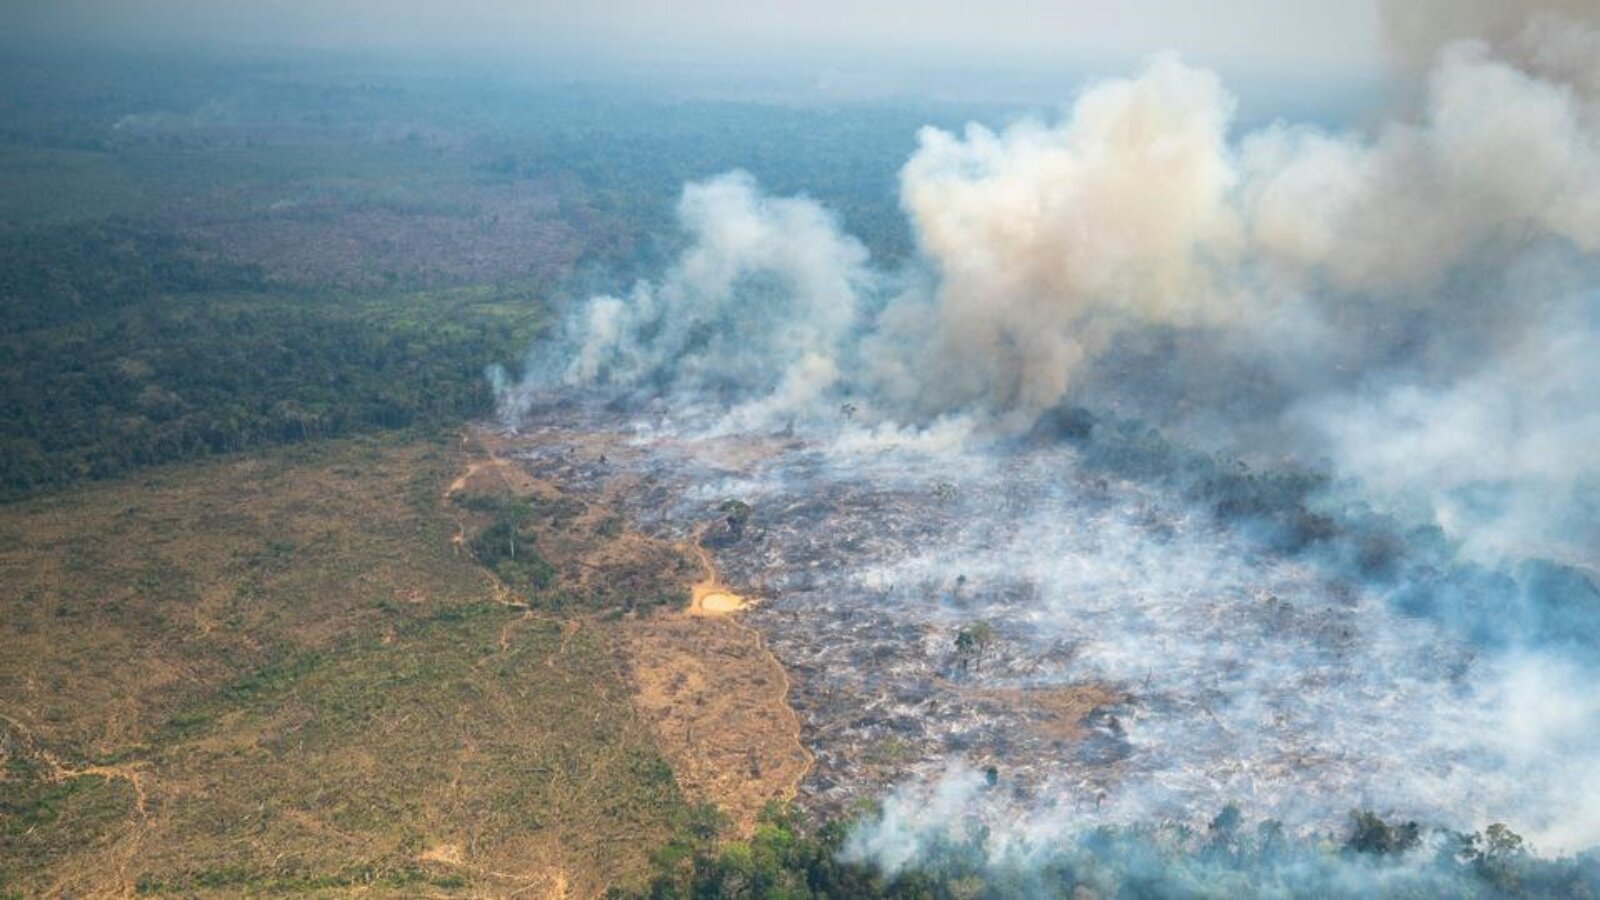 الدخان يتصاعد من حريق غابة في حديقة تشيريبكويت الطبيعية الوطنية، في شمال غرب الأمازون الكولومبي في 4 فبراير 2022